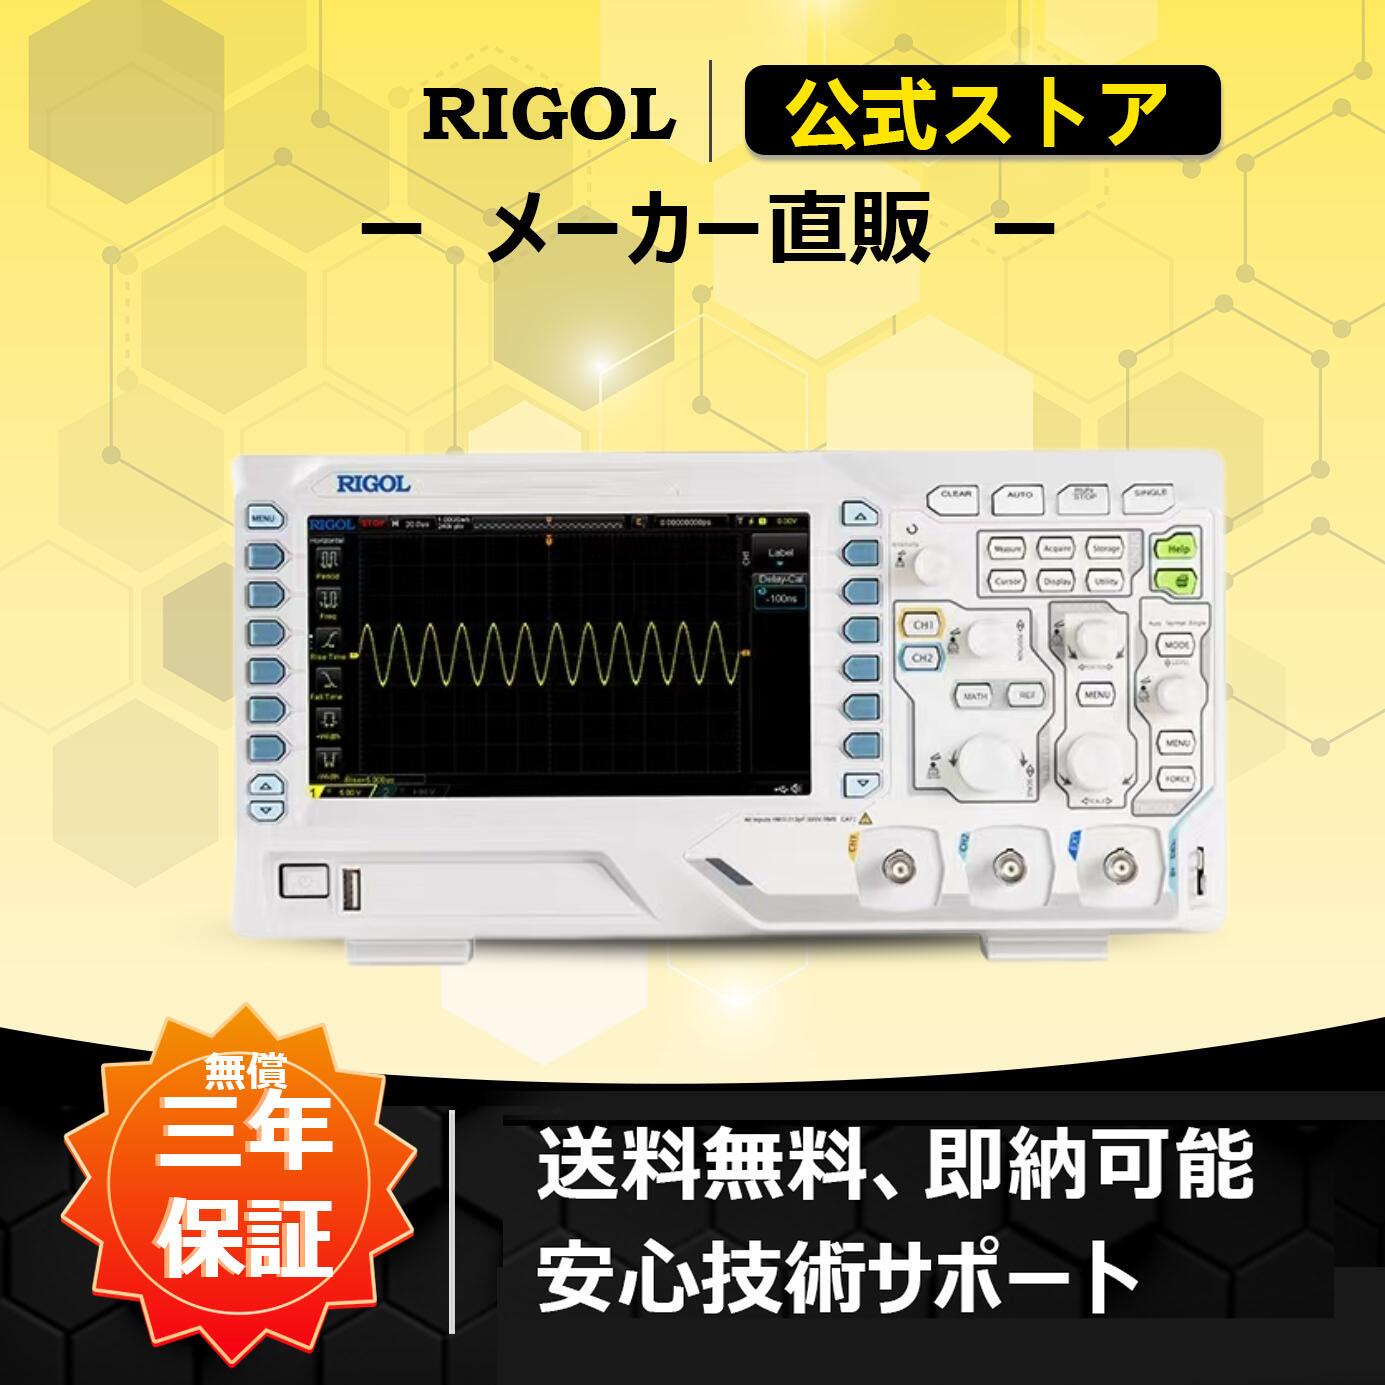 送料無料 RIGOLデジタル・オシロスコープ DS1102Z-E 2アナログチャンネル 100MHz周波数帯域 1GSa/sリアルタイム・サンプルレート 24Mポイントレコード長 8bit高解像度 最大10V/div垂直軸レンジ 最高30000wfms/s高速波形取り込みレート